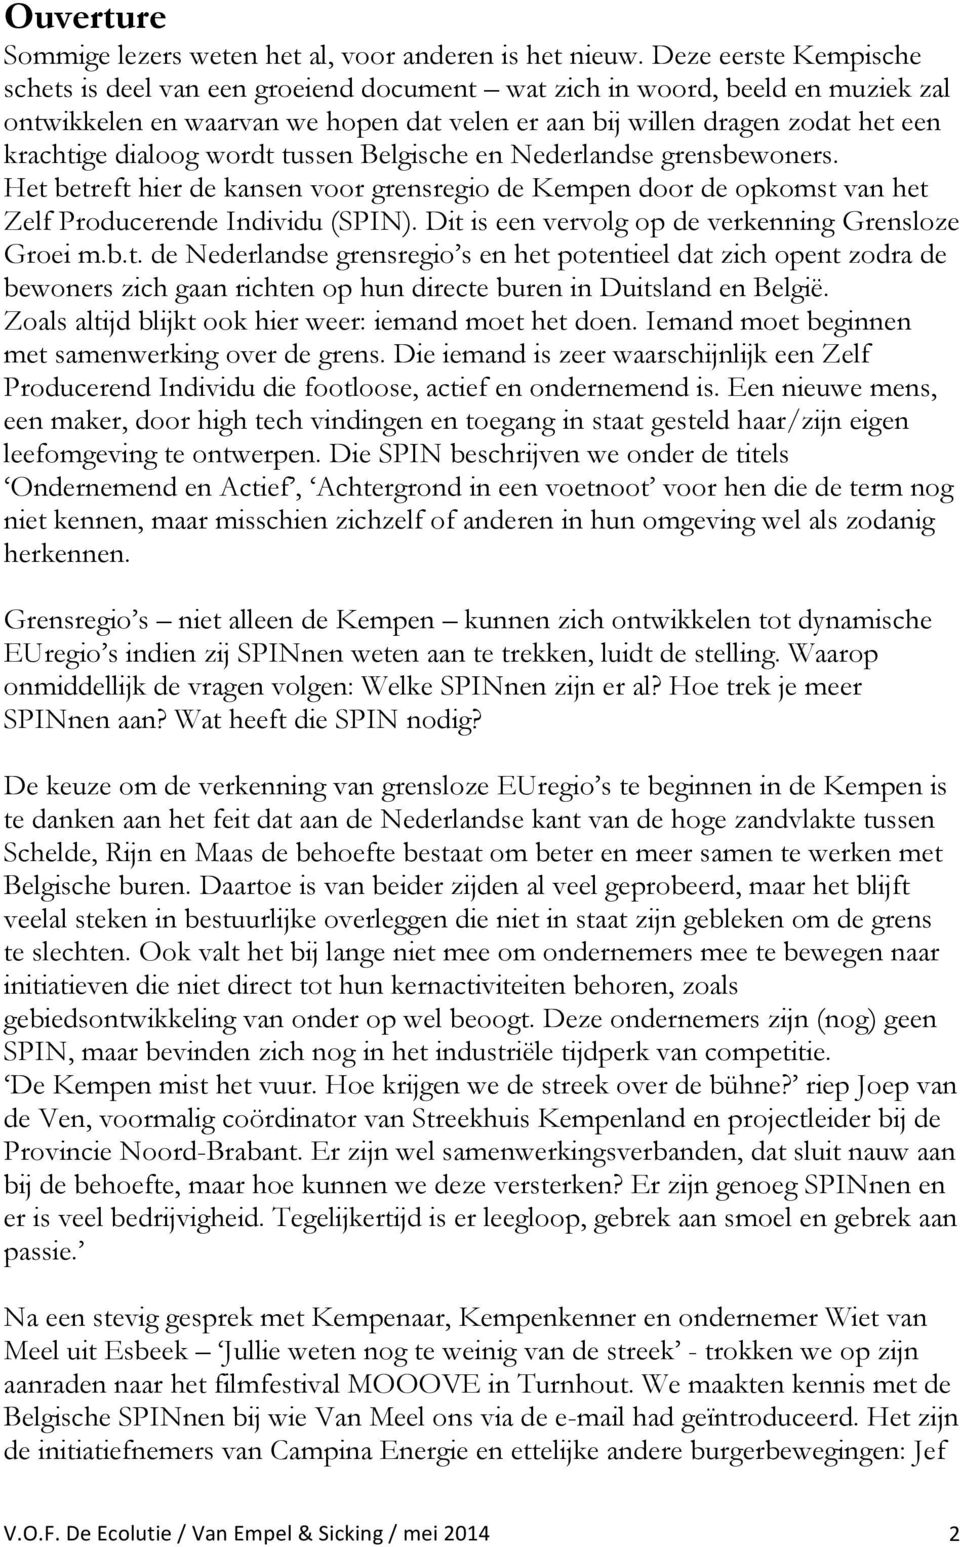 dialoog wordt tussen Belgische en Nederlandse grensbewoners. Het betreft hier de kansen voor grensregio de Kempen door de opkomst van het Zelf Producerende Individu (SPIN).